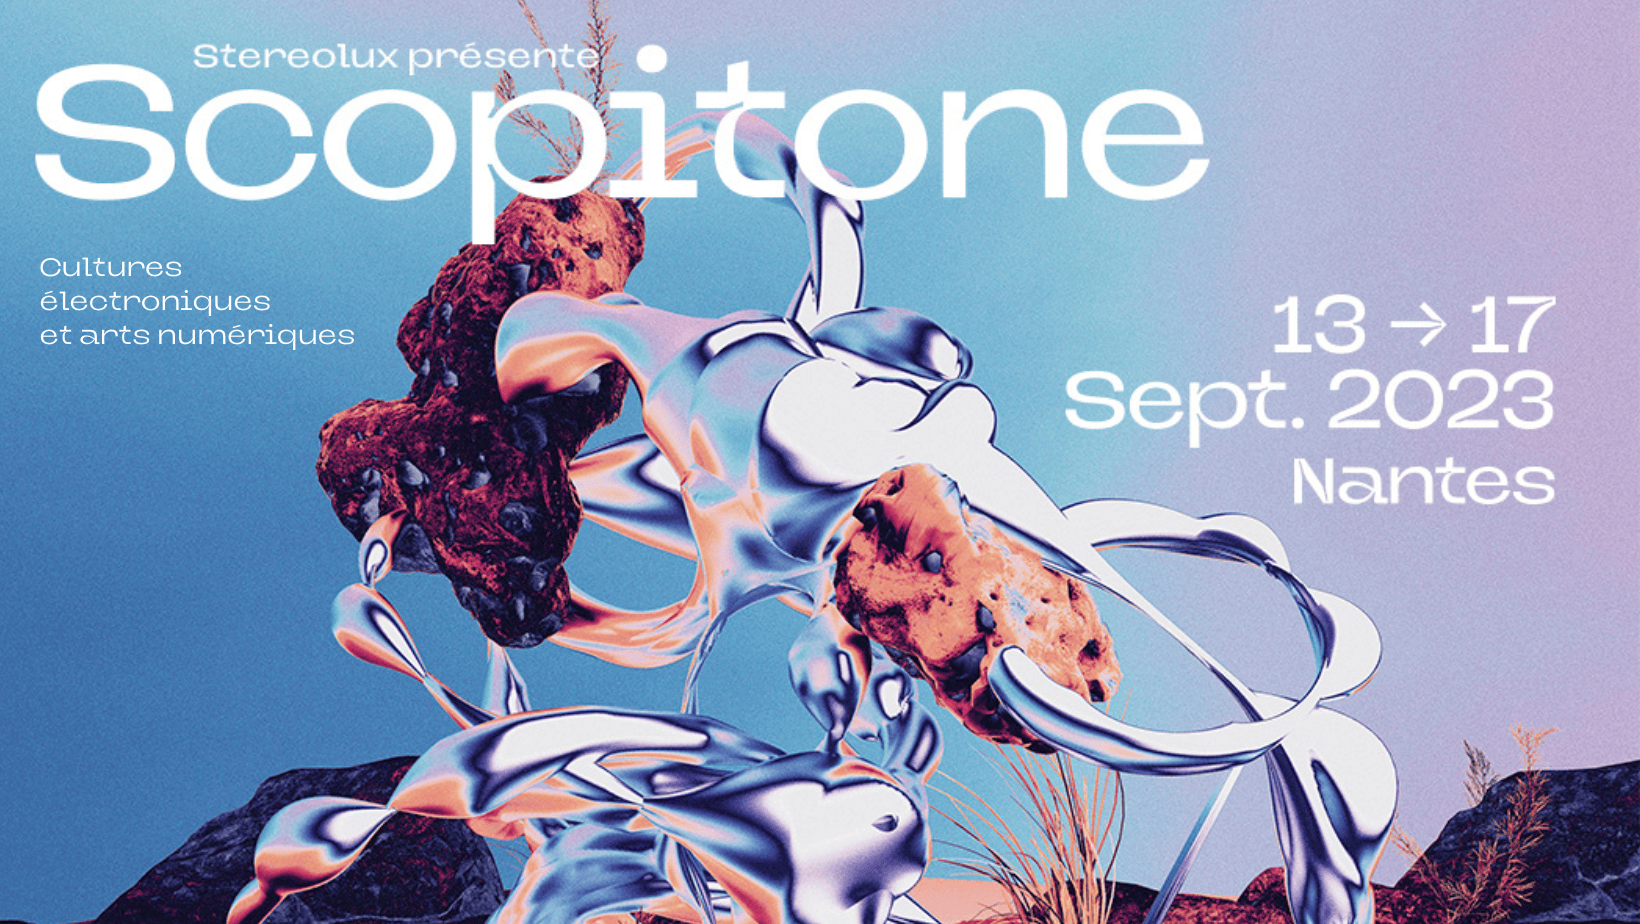 Affiche de l'exposition Scopitone avec écrit Stereolux présente Scopitone, cultures éléctroniques et arts numériques, du 13 au 17 septembre 2023